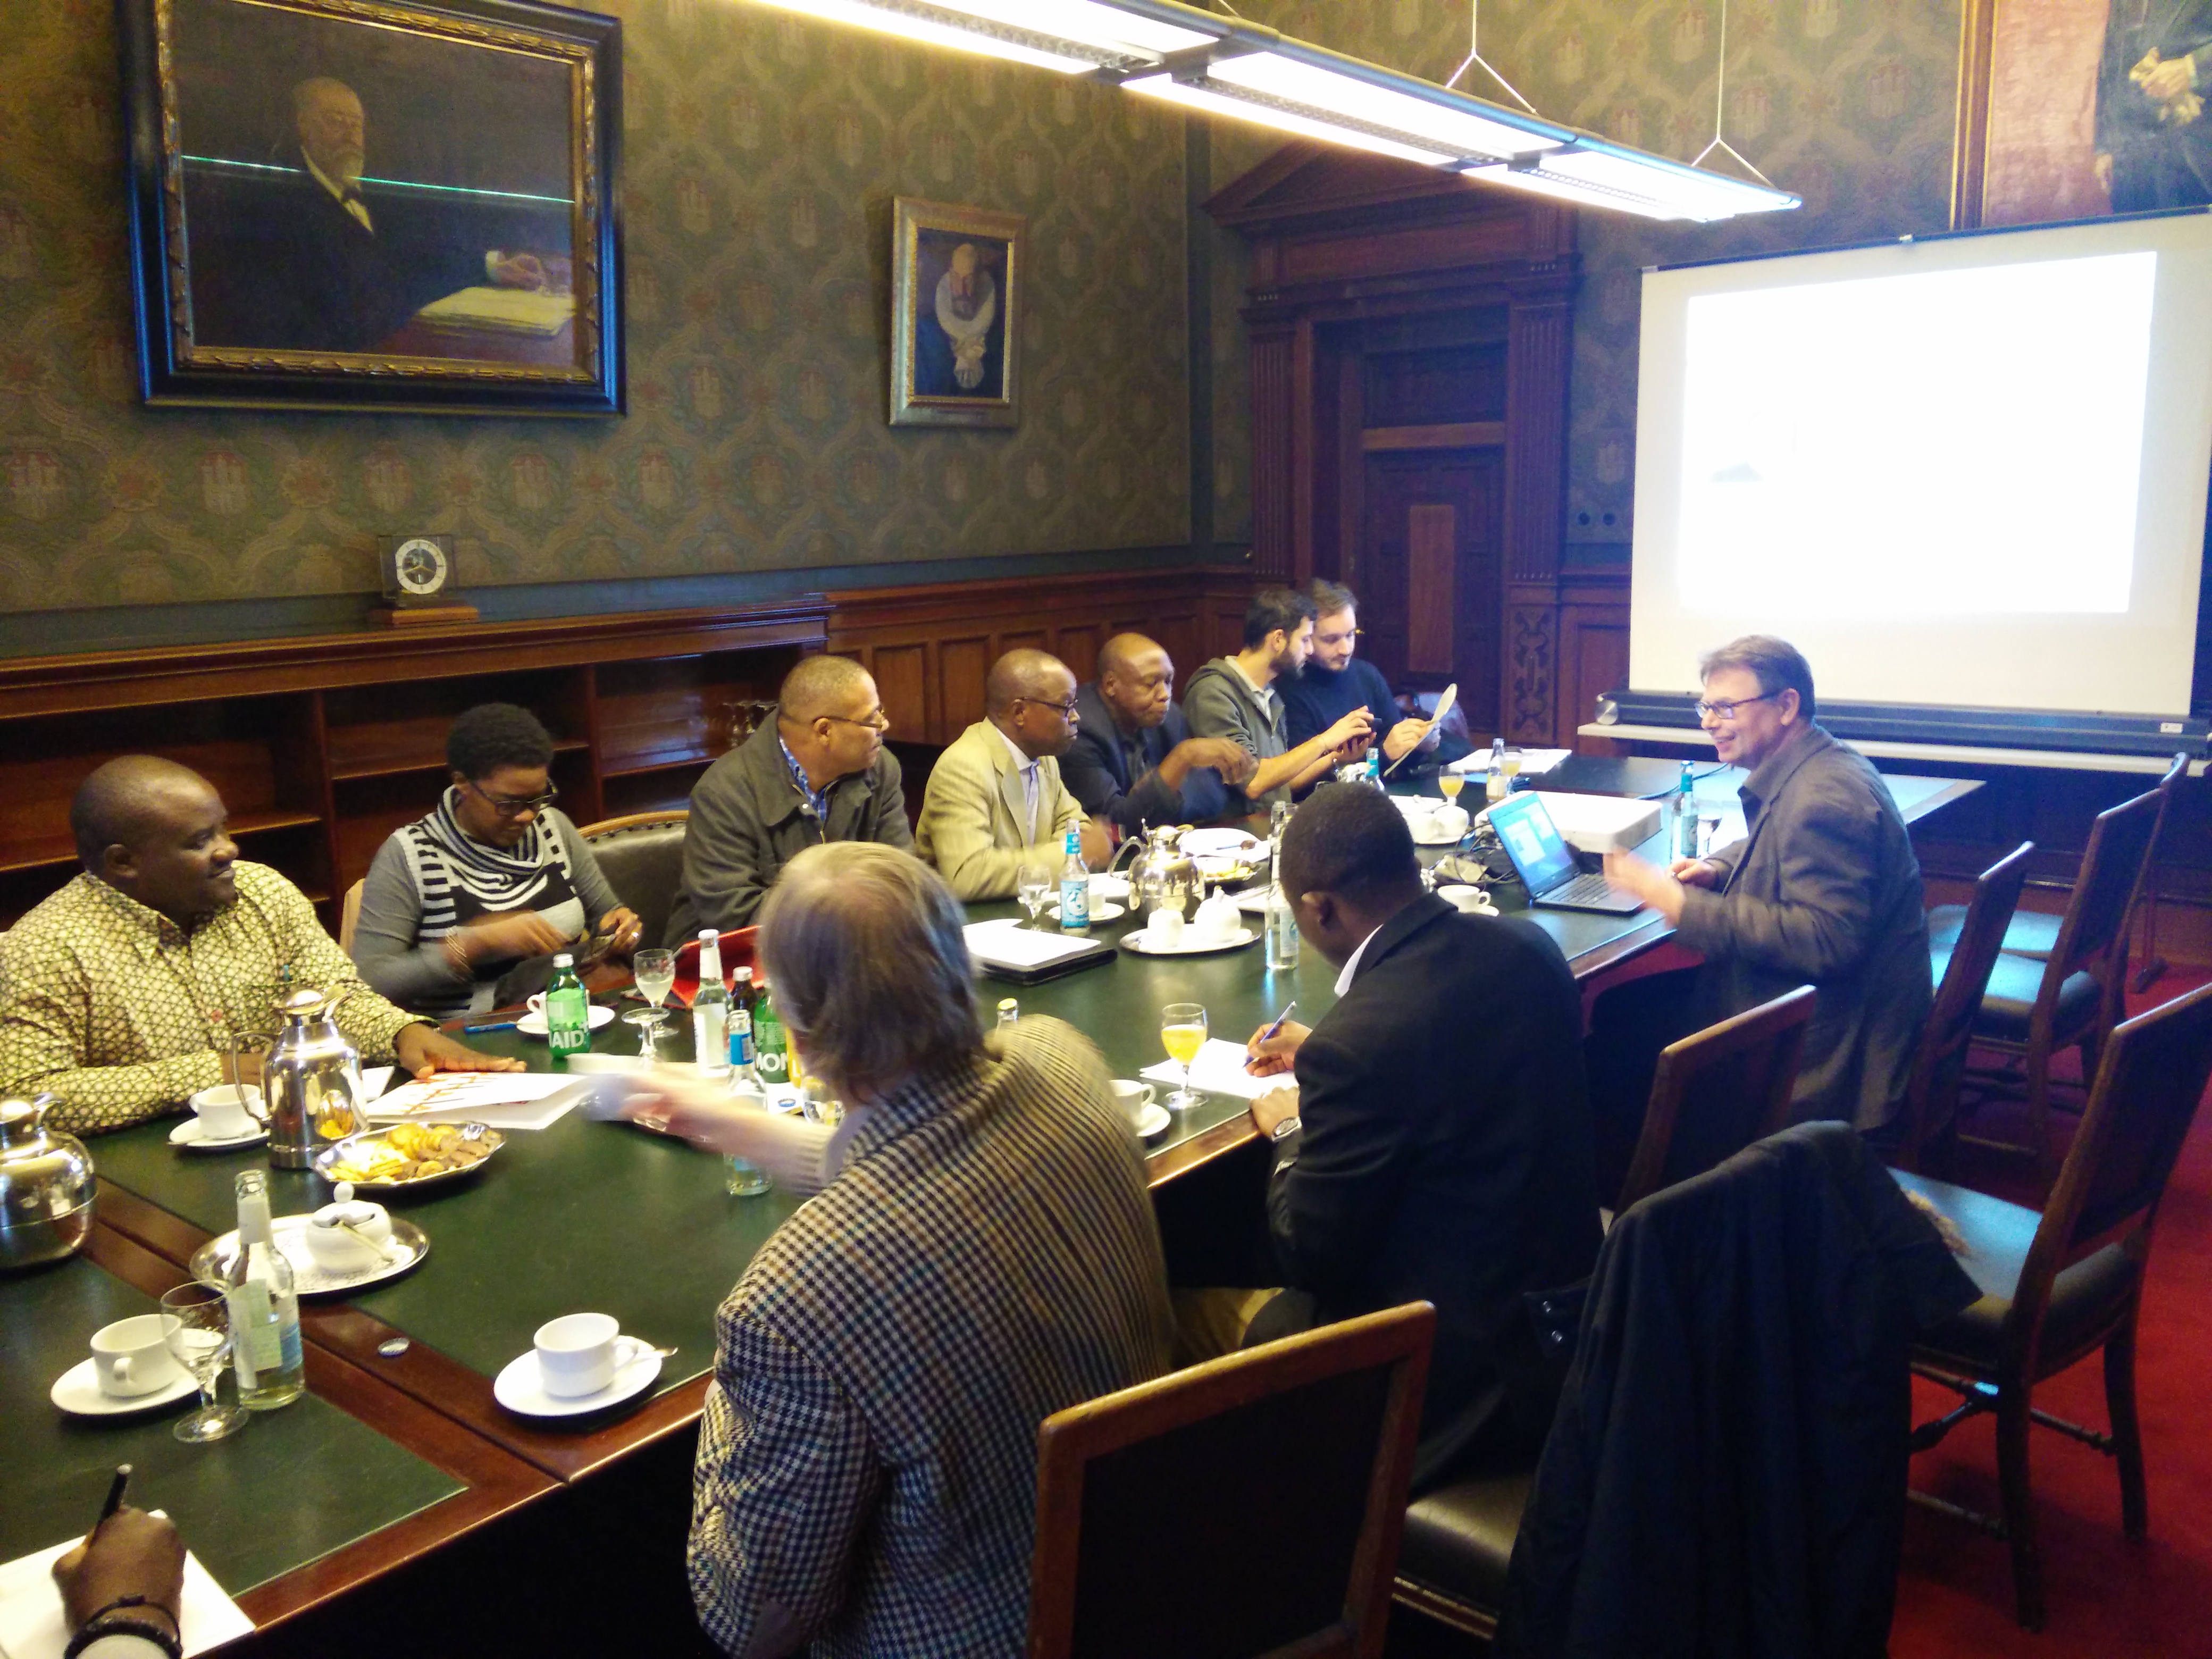 Das Foto zeigt eine Diskussionsrunde im Hamburger Rathaus. Die Teilnehmer der Diskussionsrunde sitzen an einem langen Tisch und tauschen sich aus.